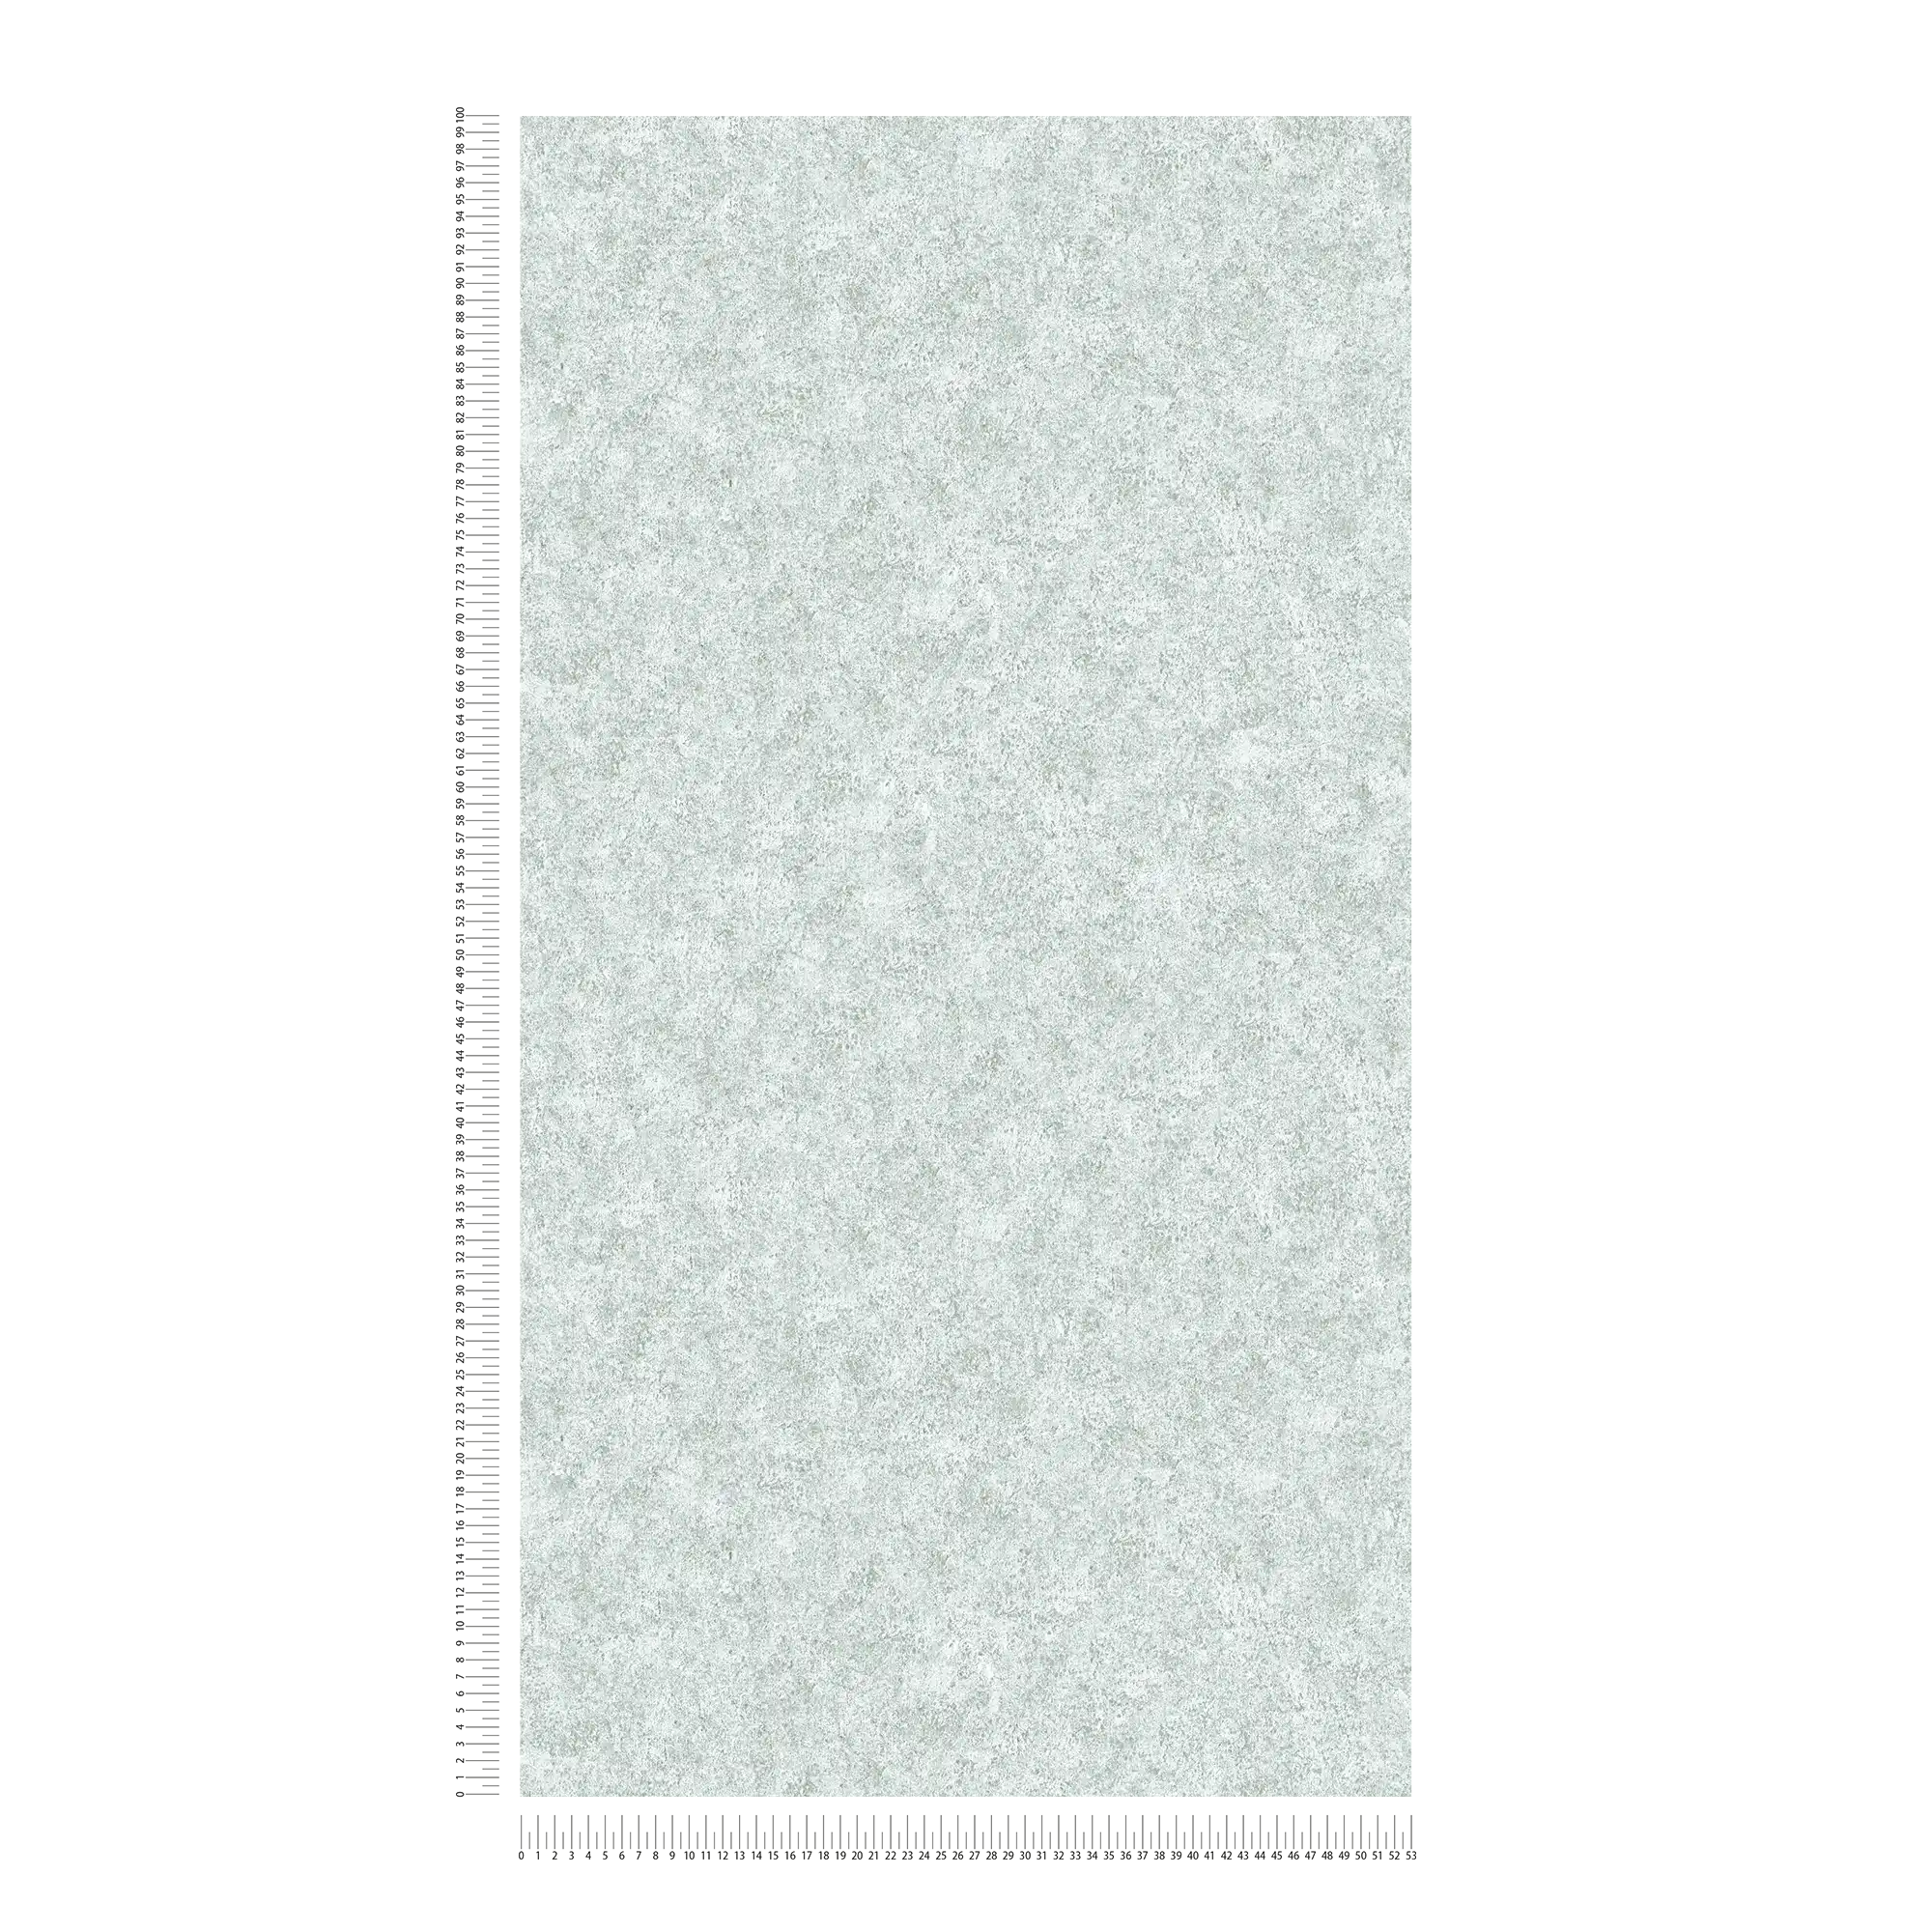             Papel pintado Melange gris con aspecto de piedra jaspeada
        